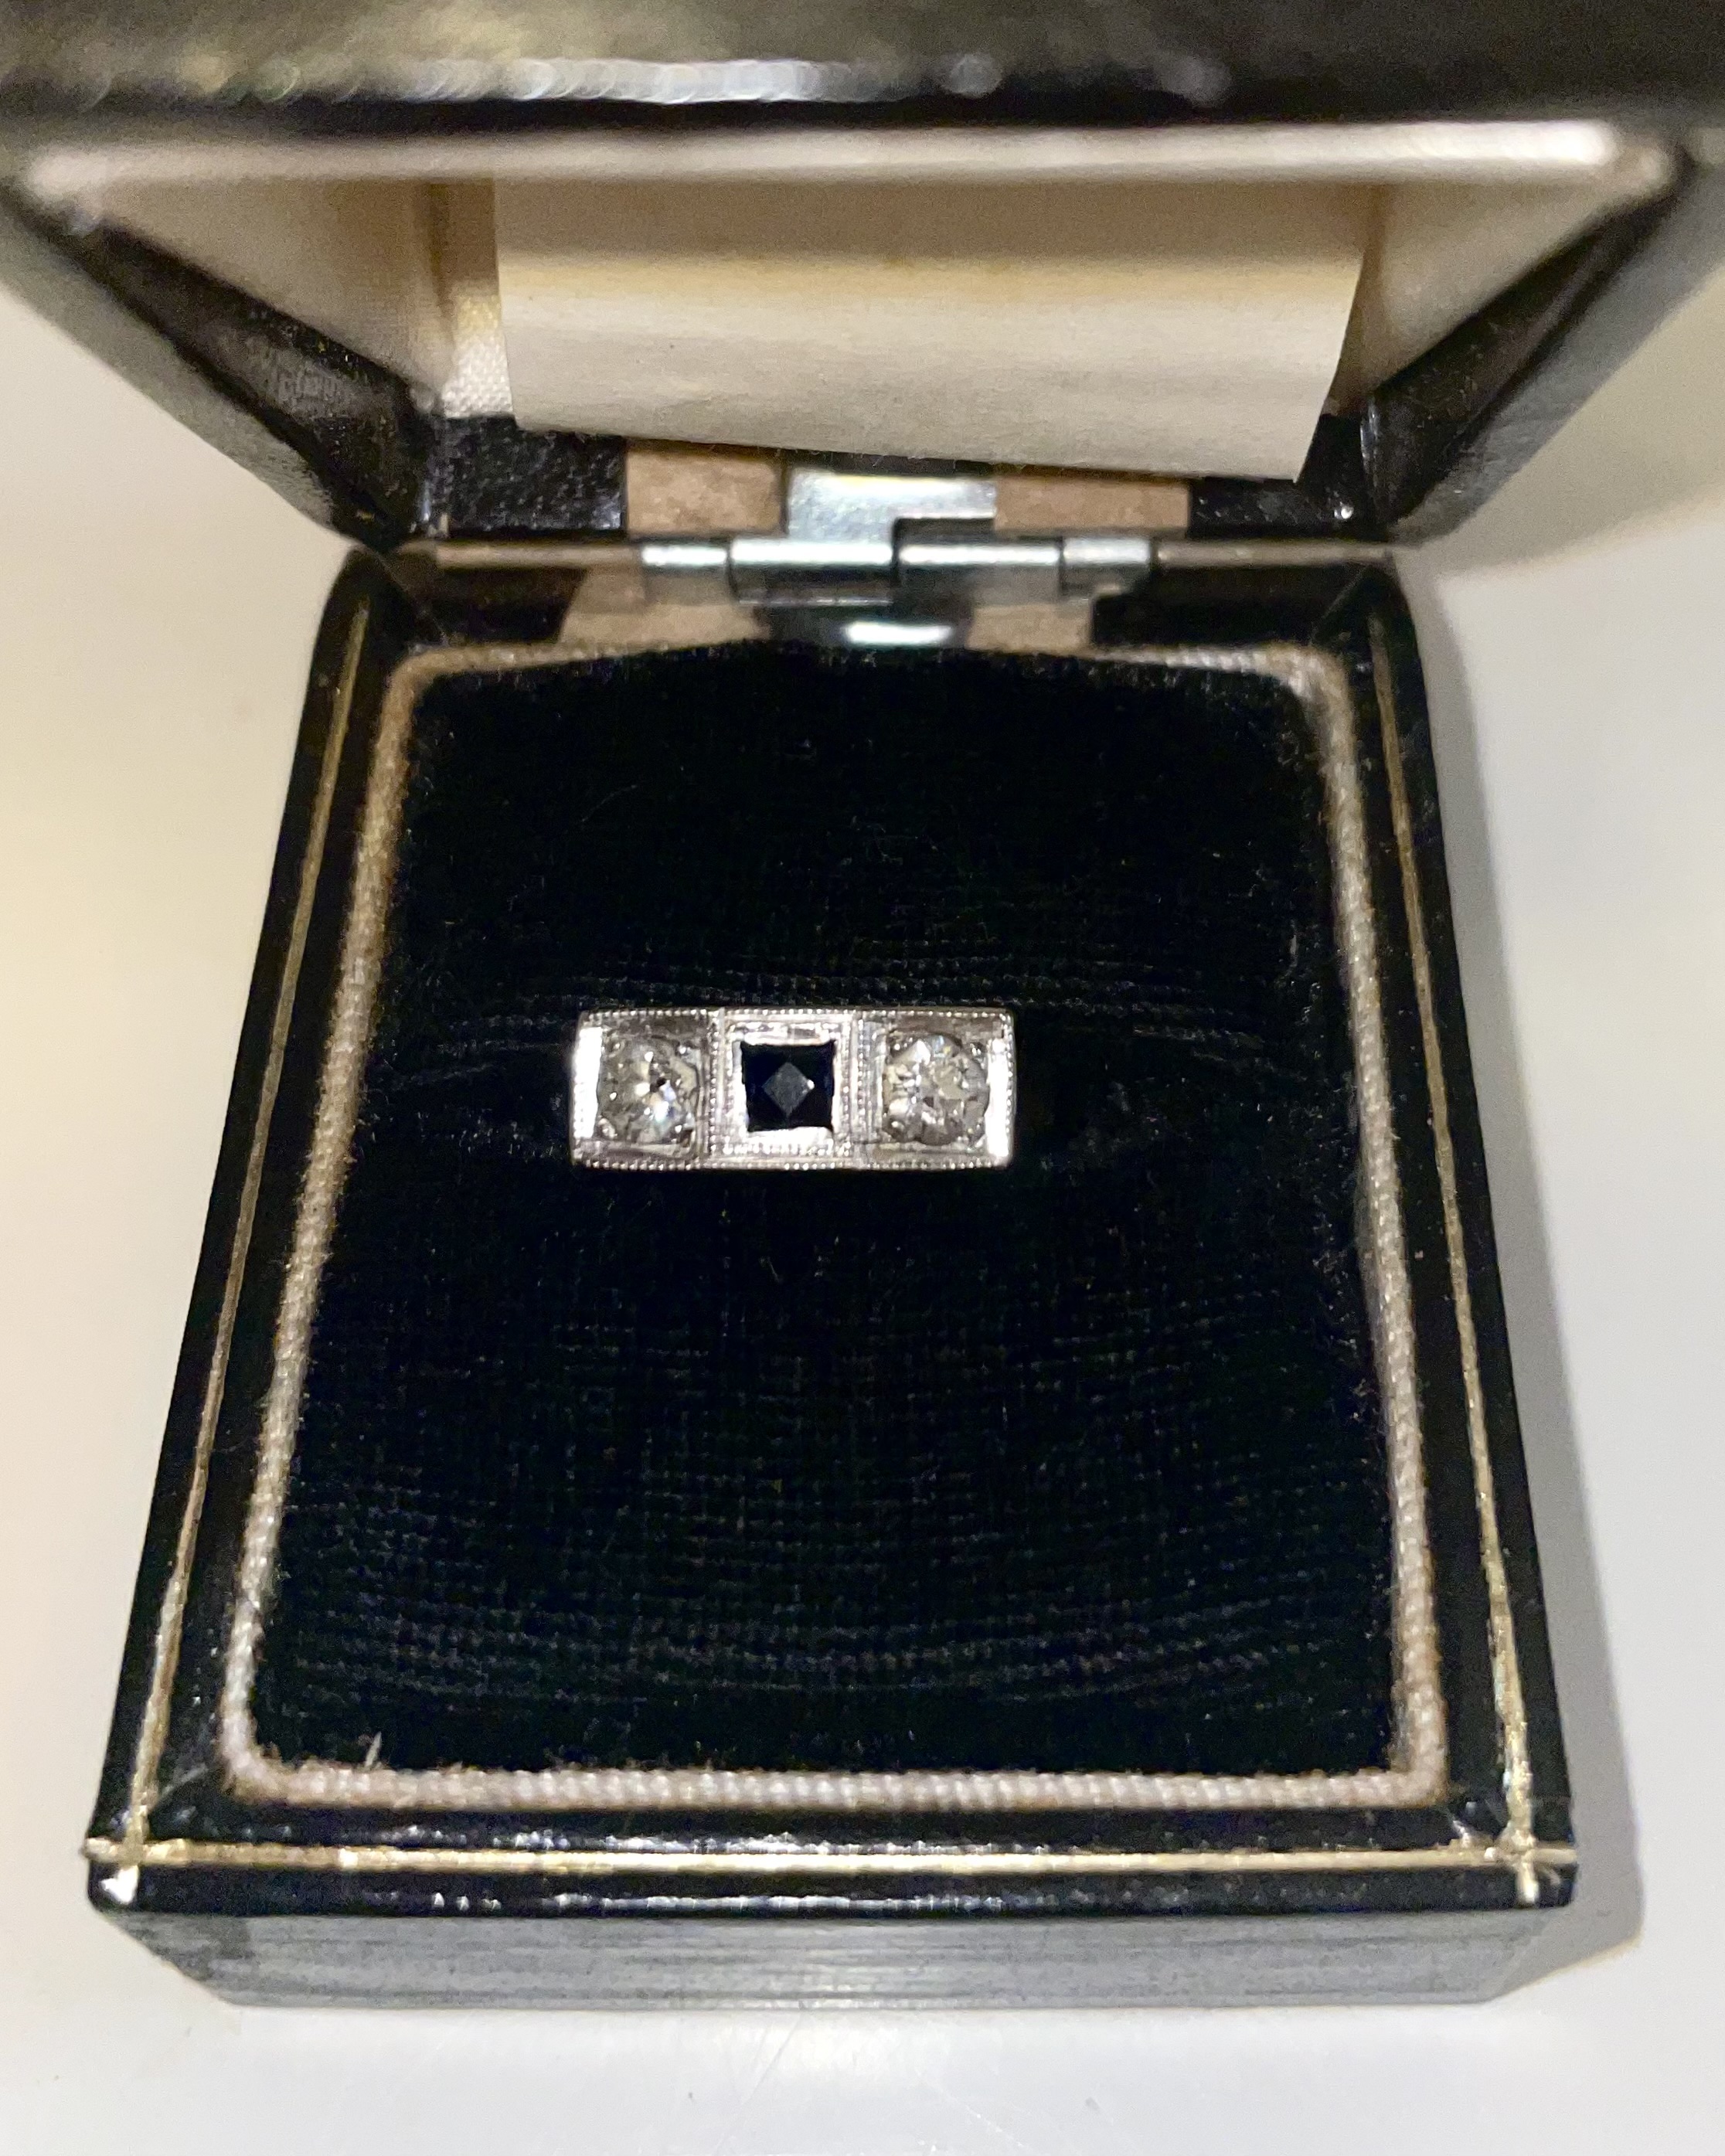 Promise Ring vs Engagement Ring | 12FIFTEEN Diamonds